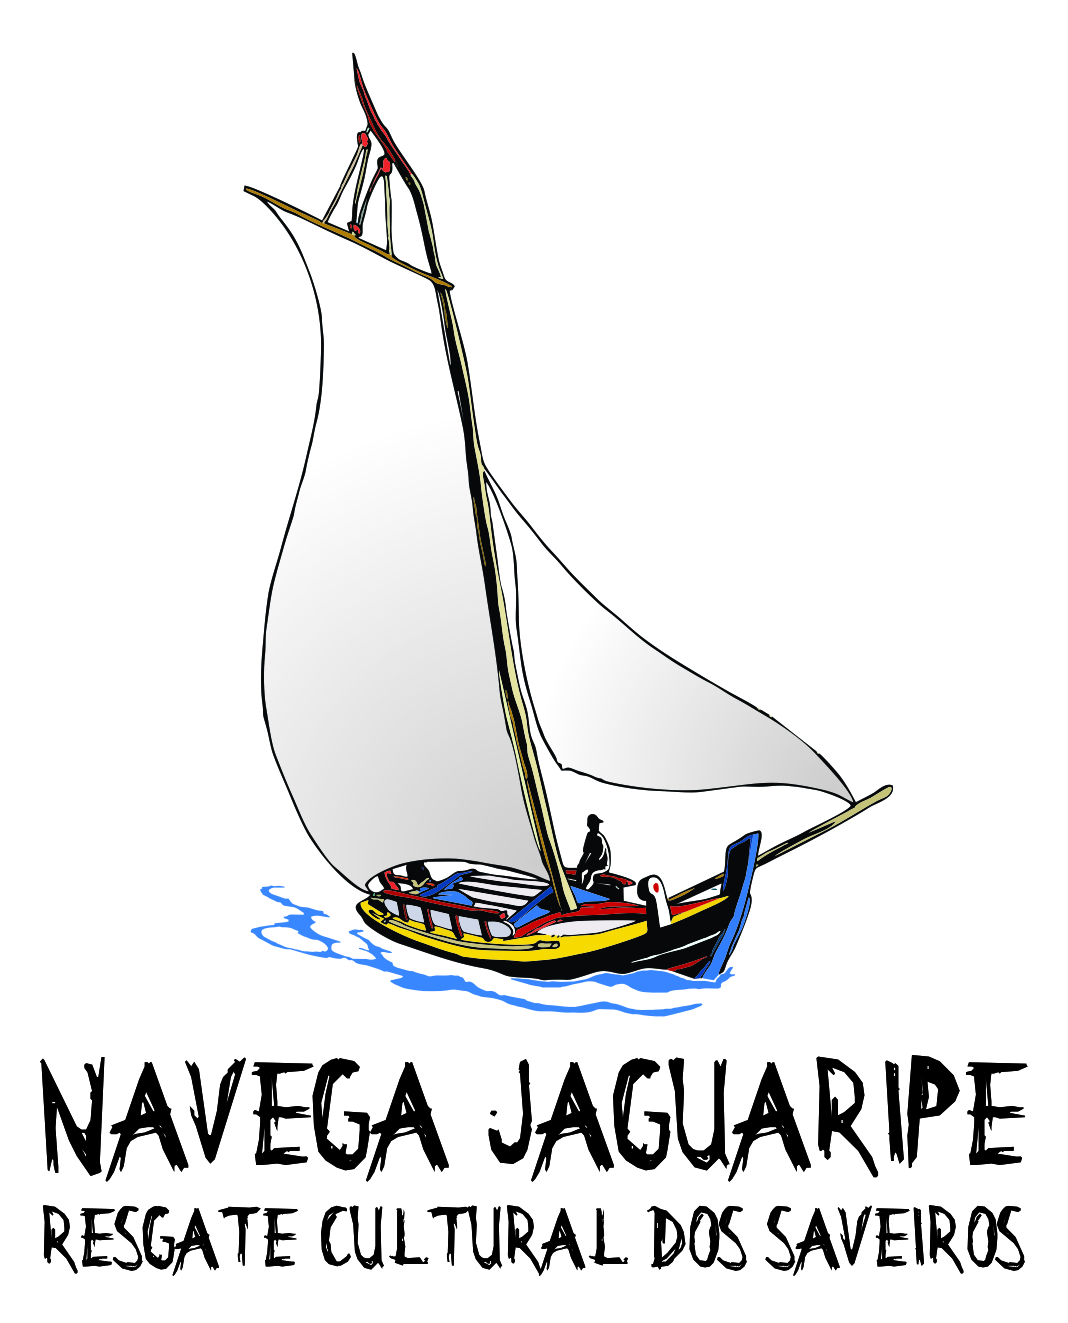 LOGO_NAVEGA_JAGUARIPE1